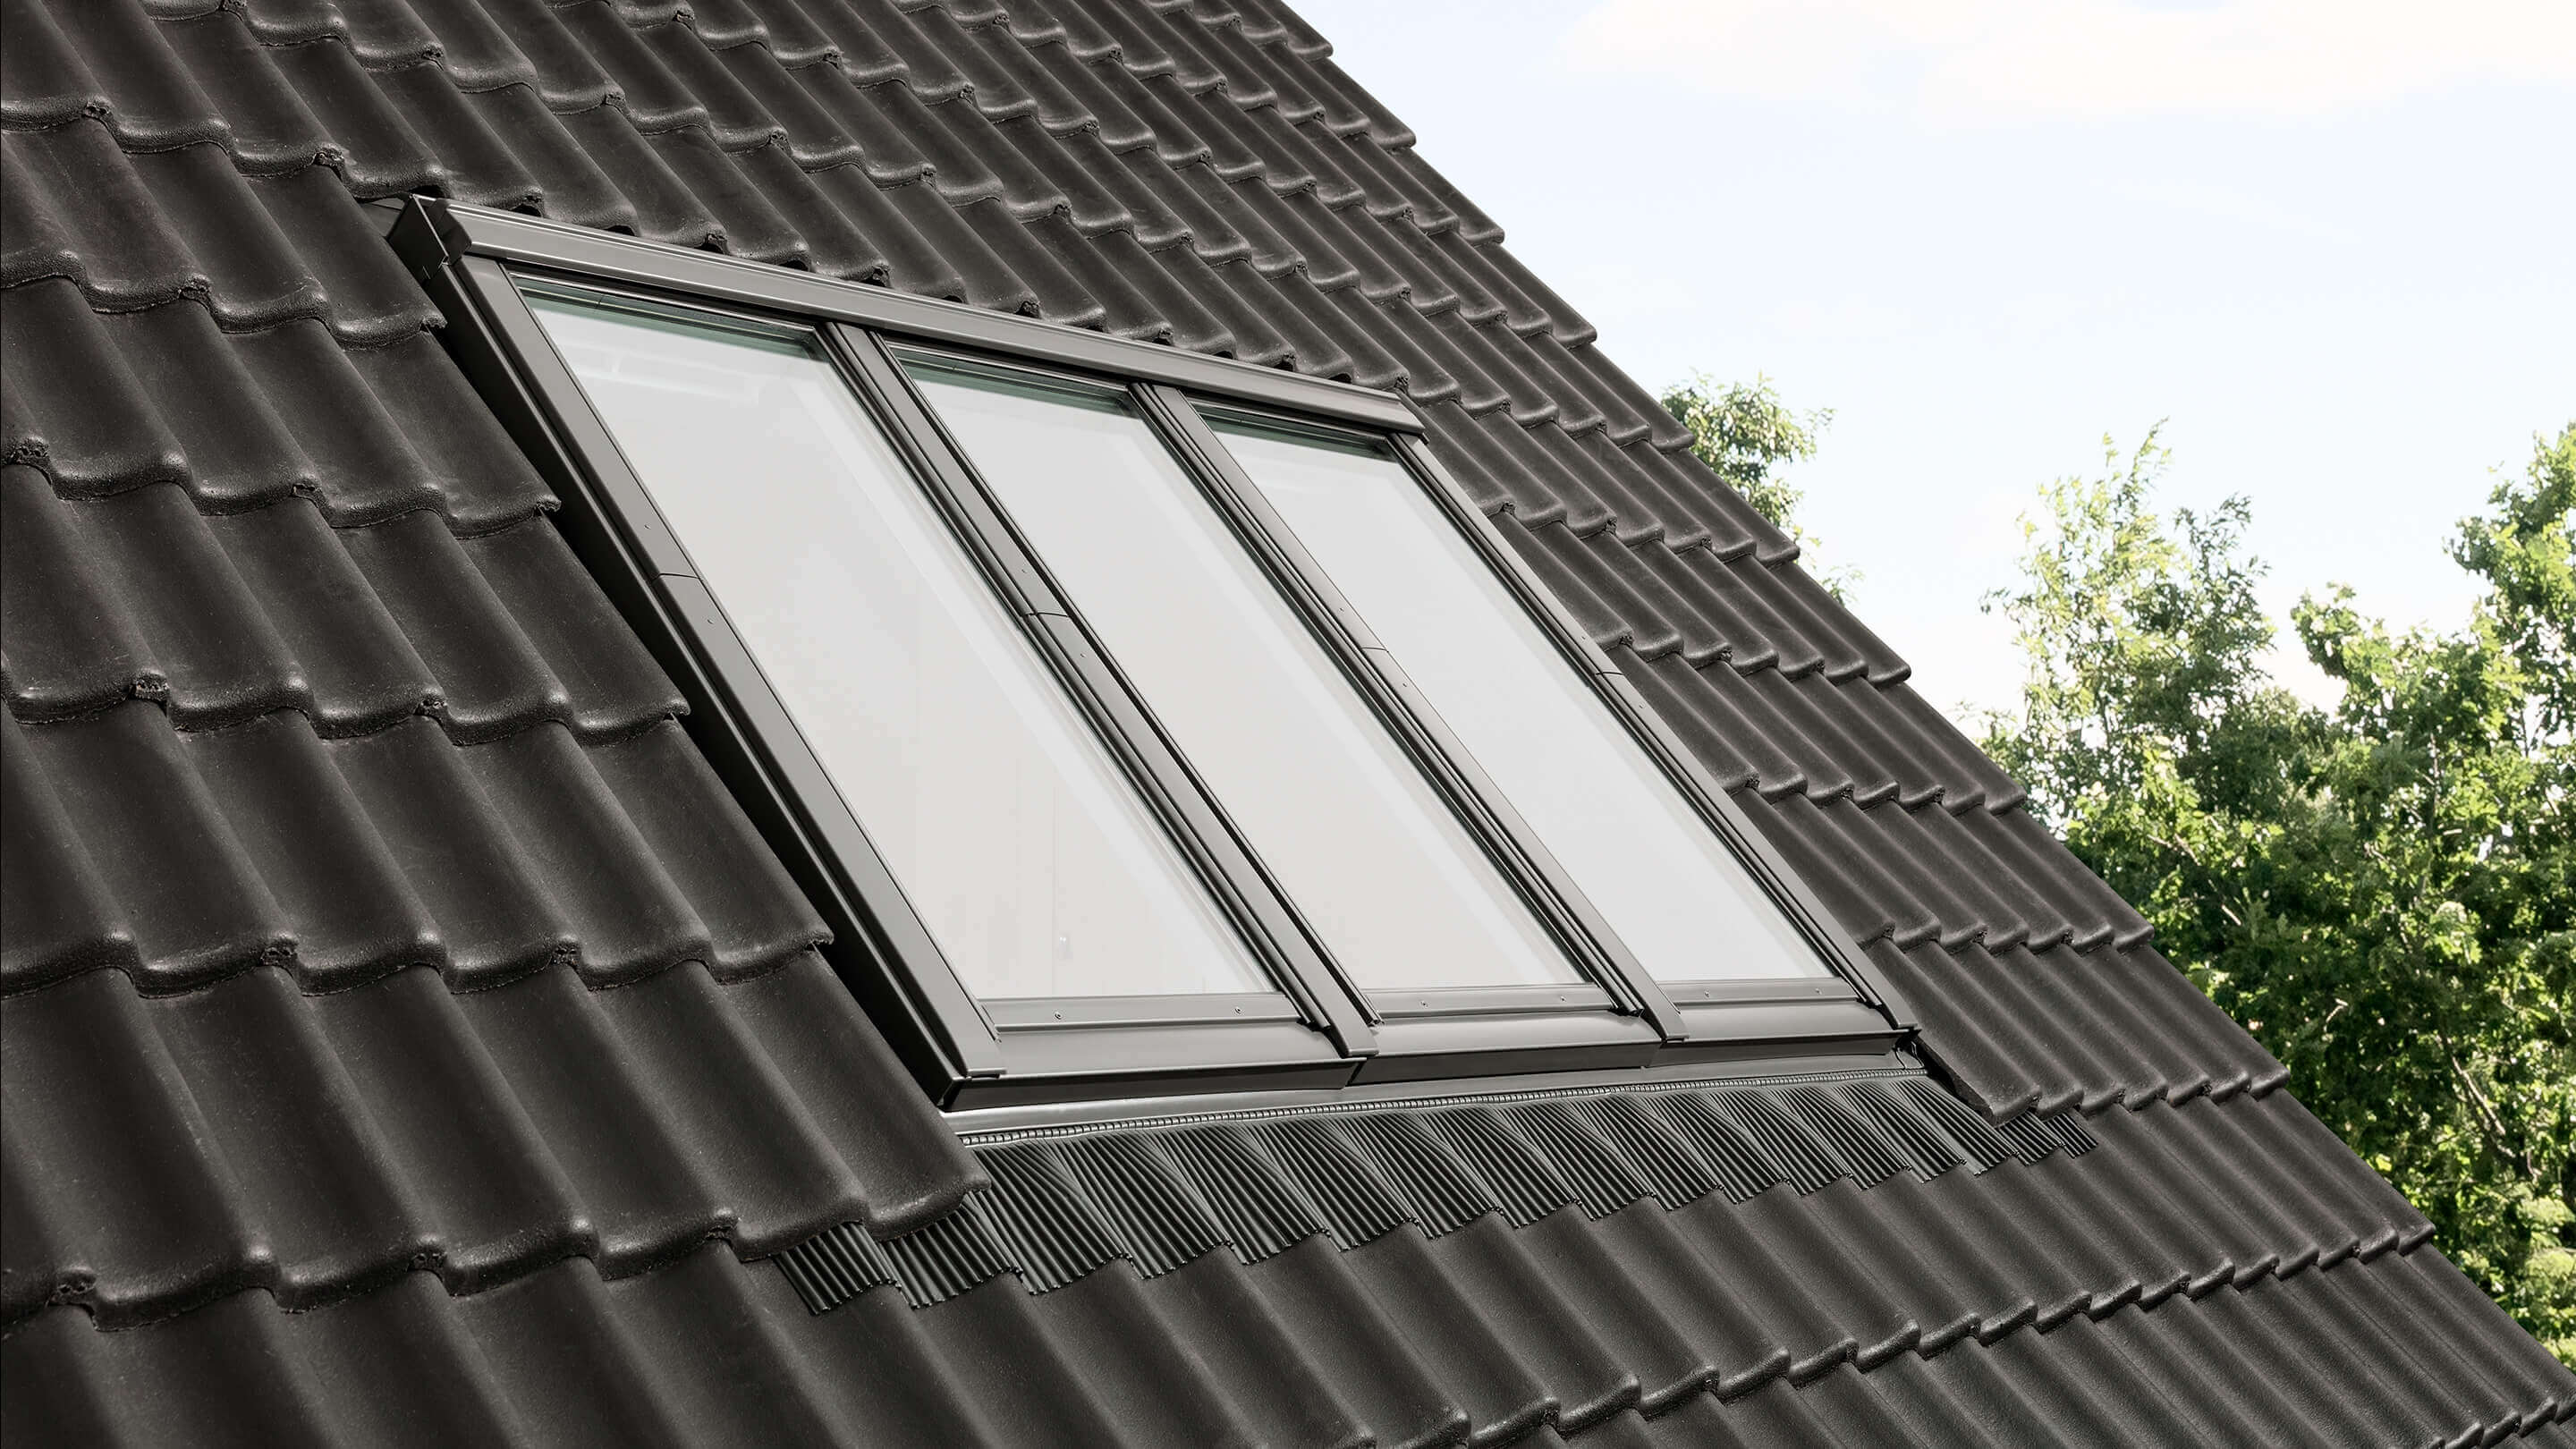 VELUX Dachflächenfenster auf dunklem Ziegeldach, vereinen Stil und Funktionalität.